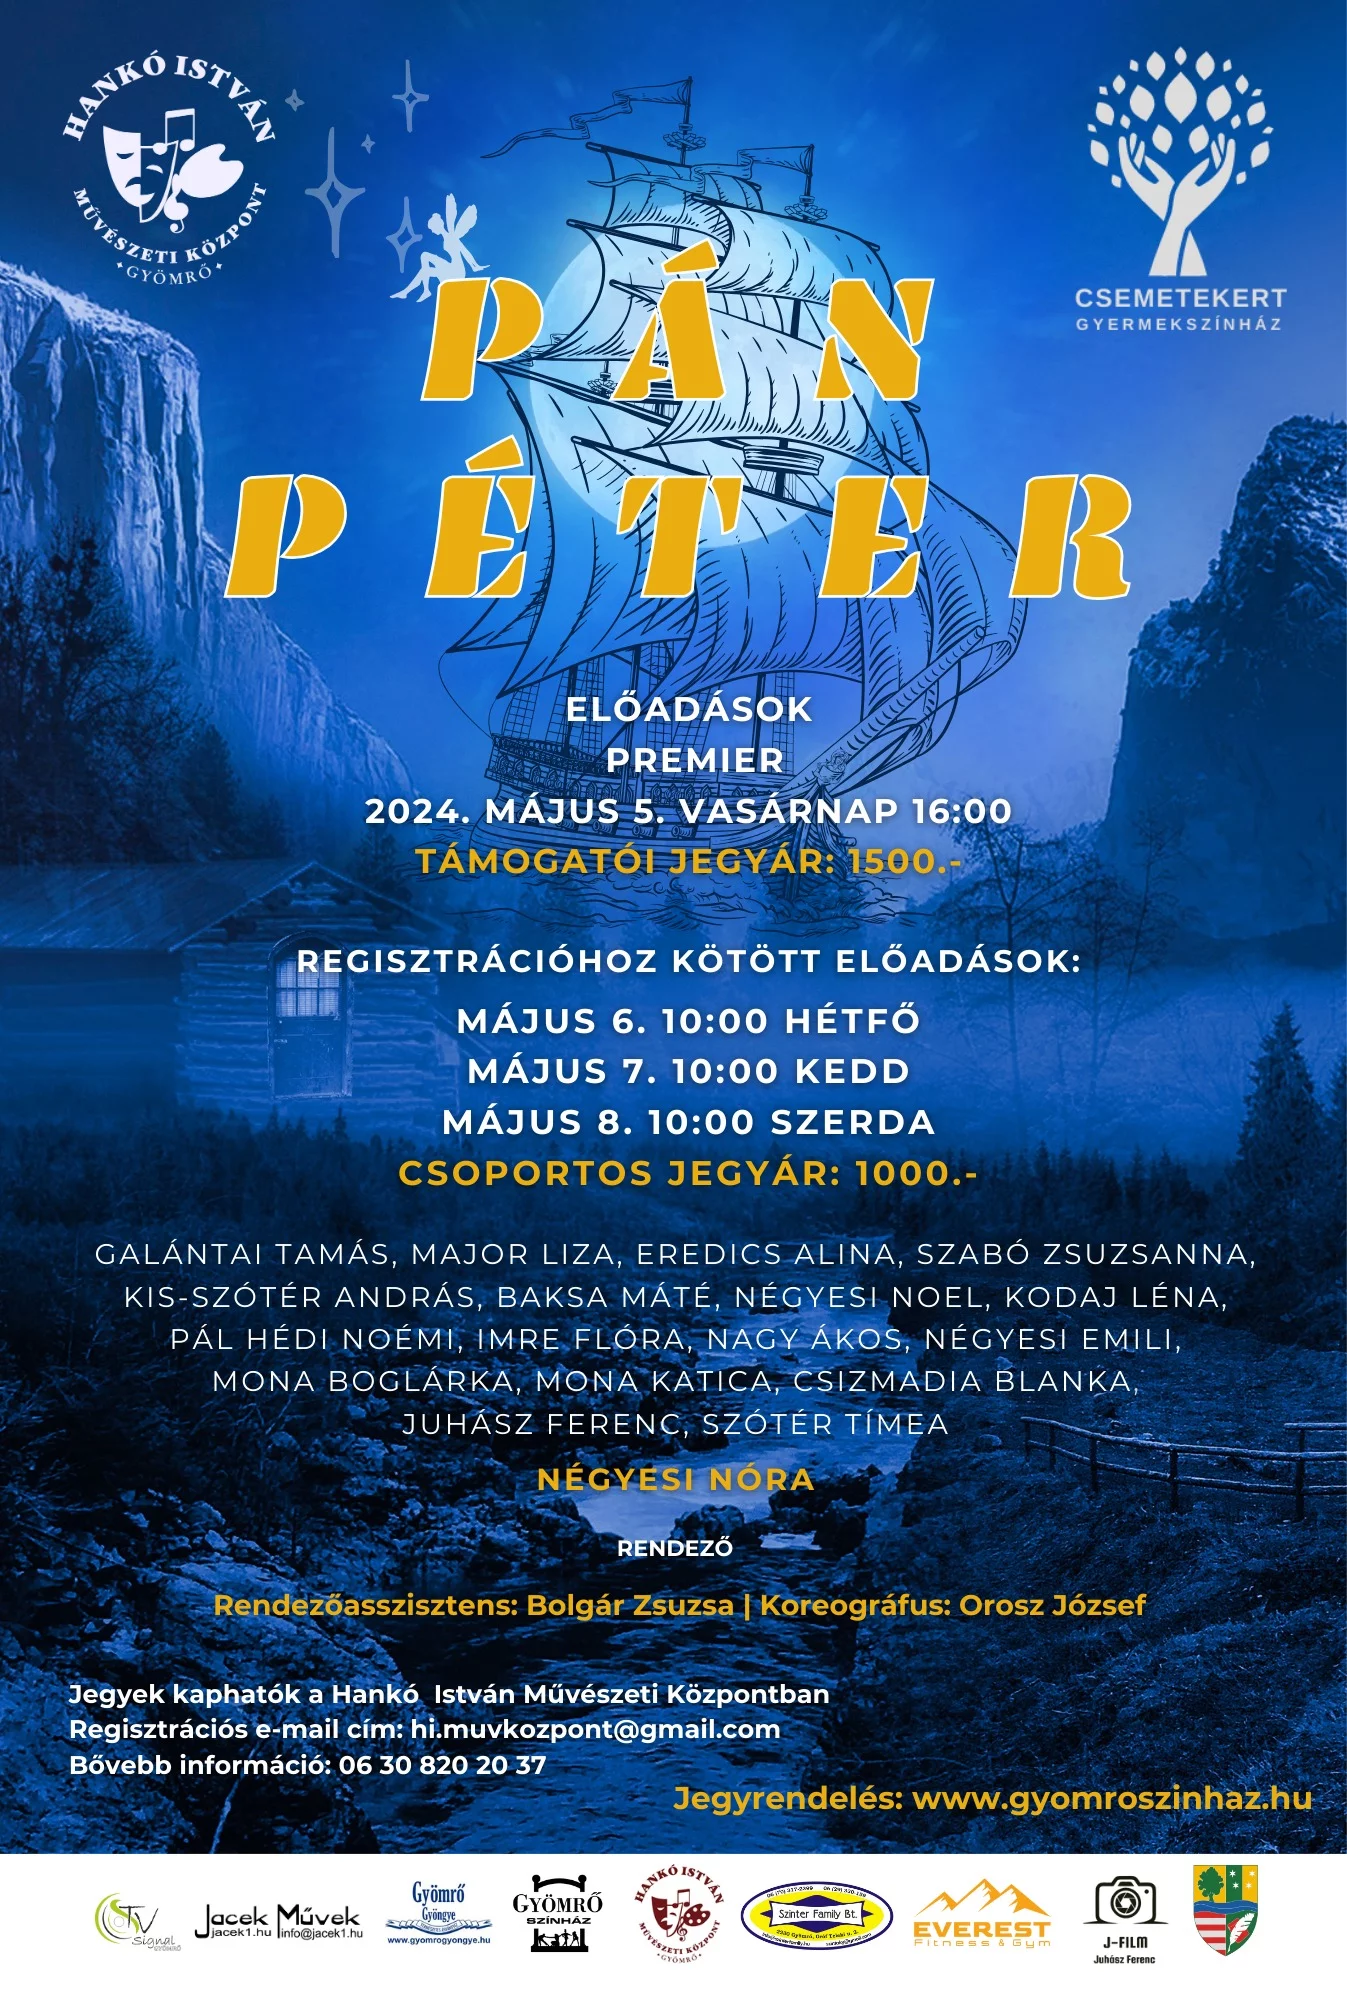 A Csemetekert Gyermekszínház bemutatja - Pán Péter